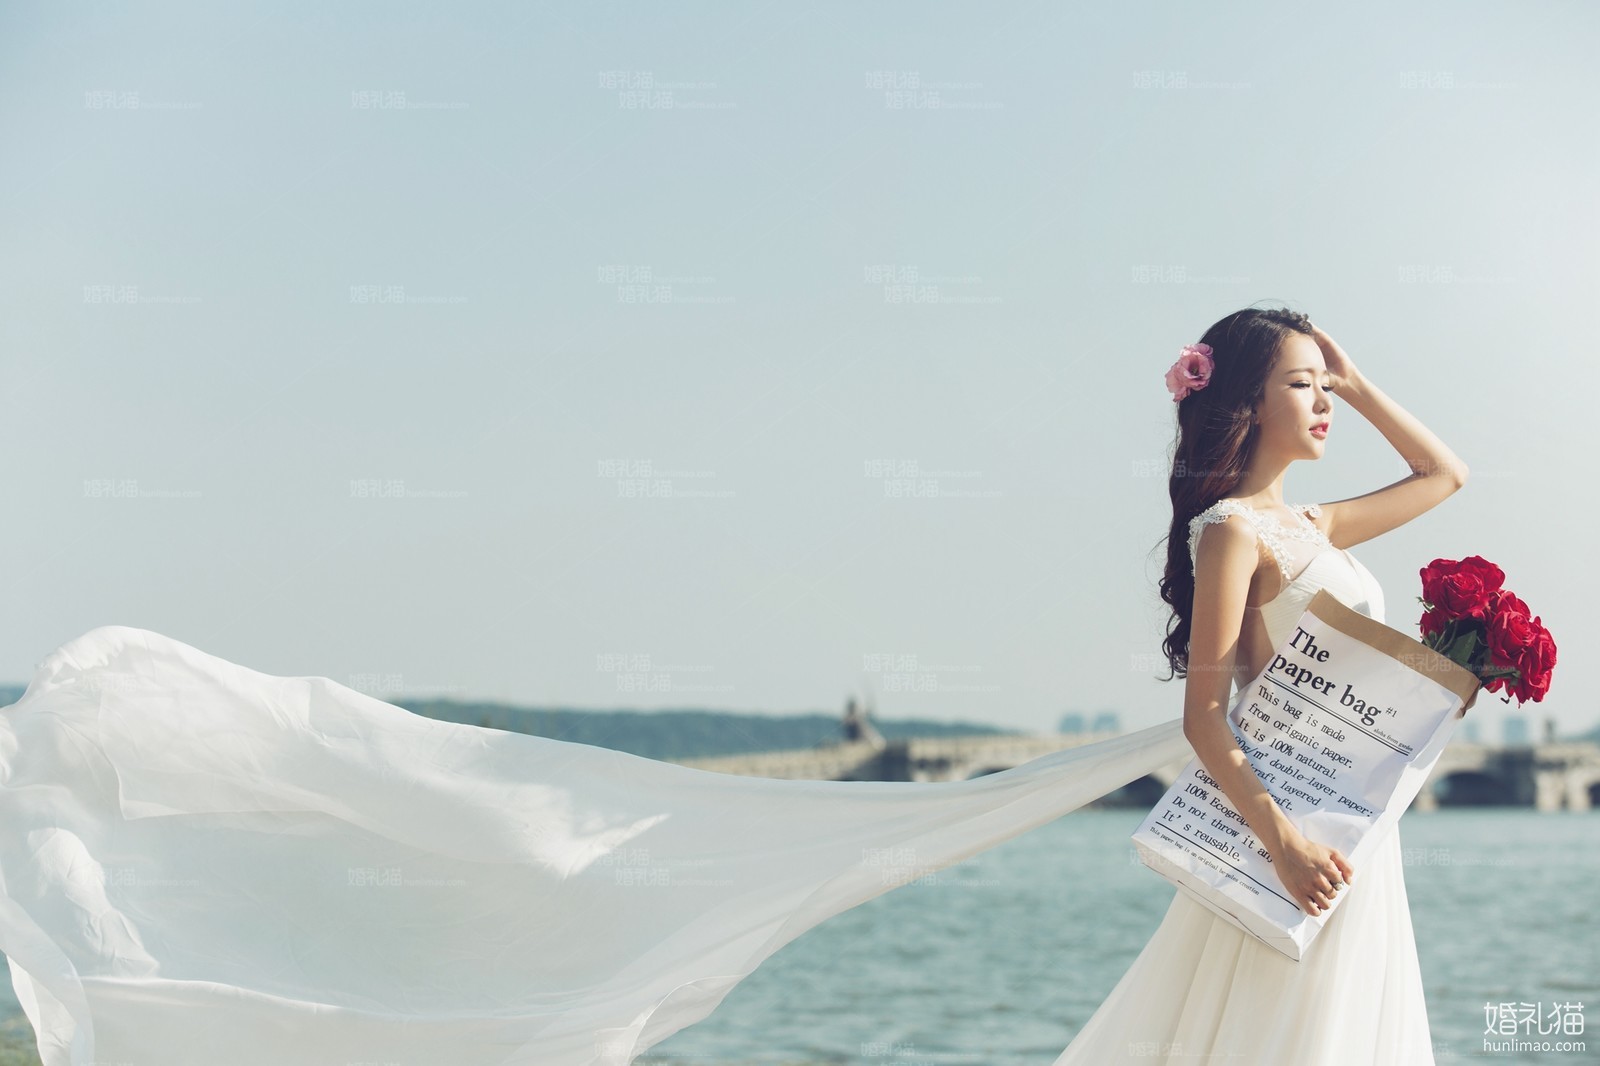 海景婚纱摄影,[海景],上海婚纱照,婚纱照图片